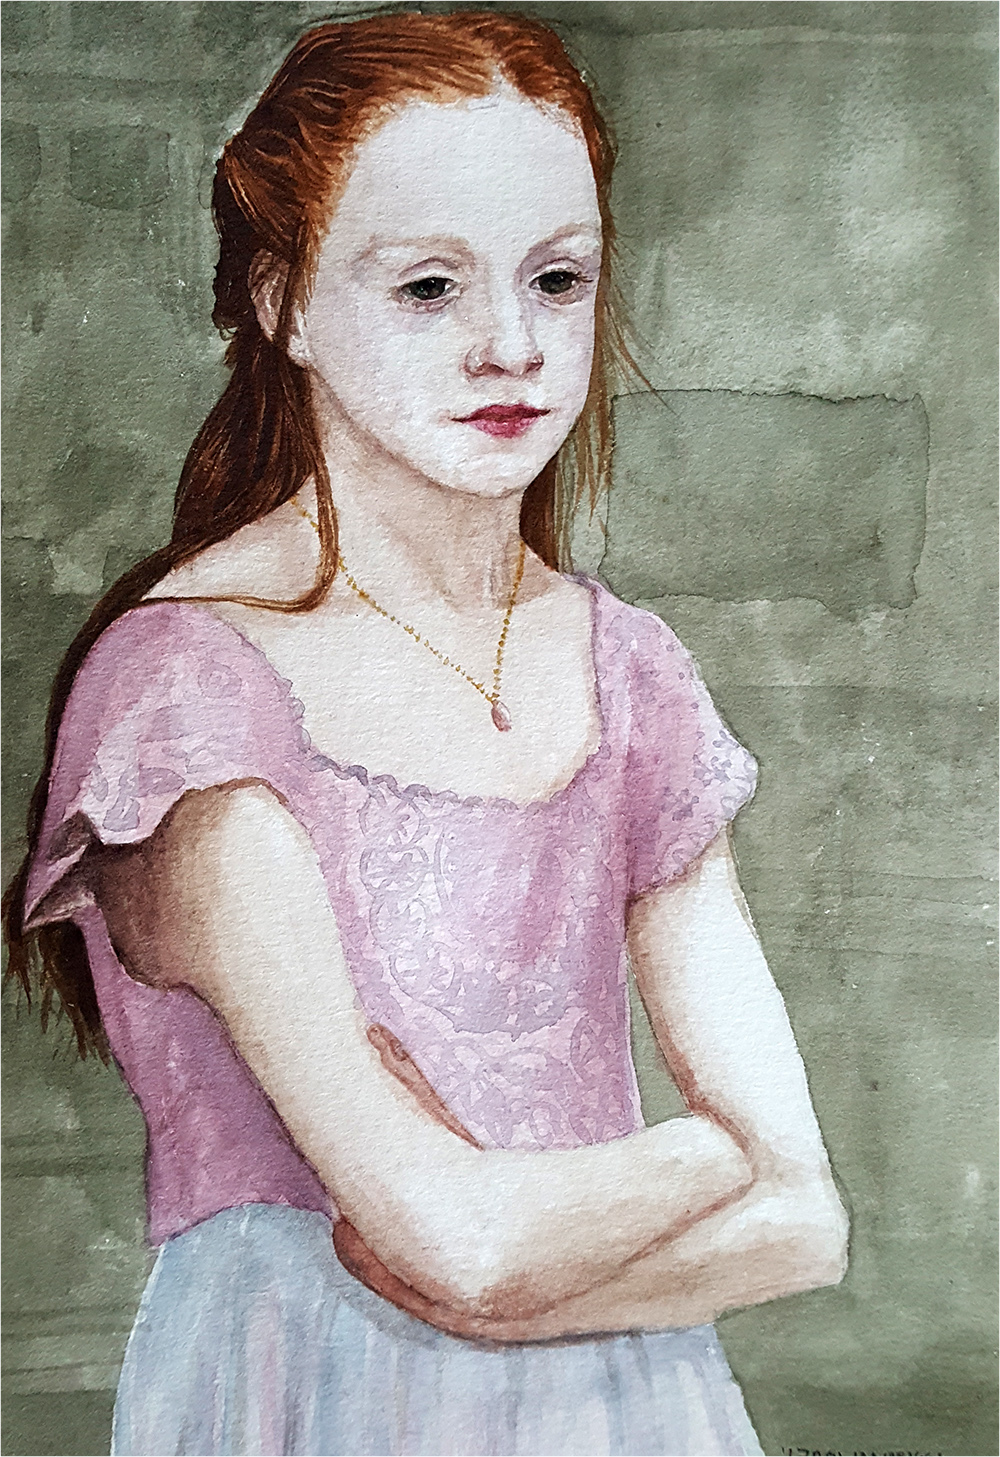 Finished watercolour portrait